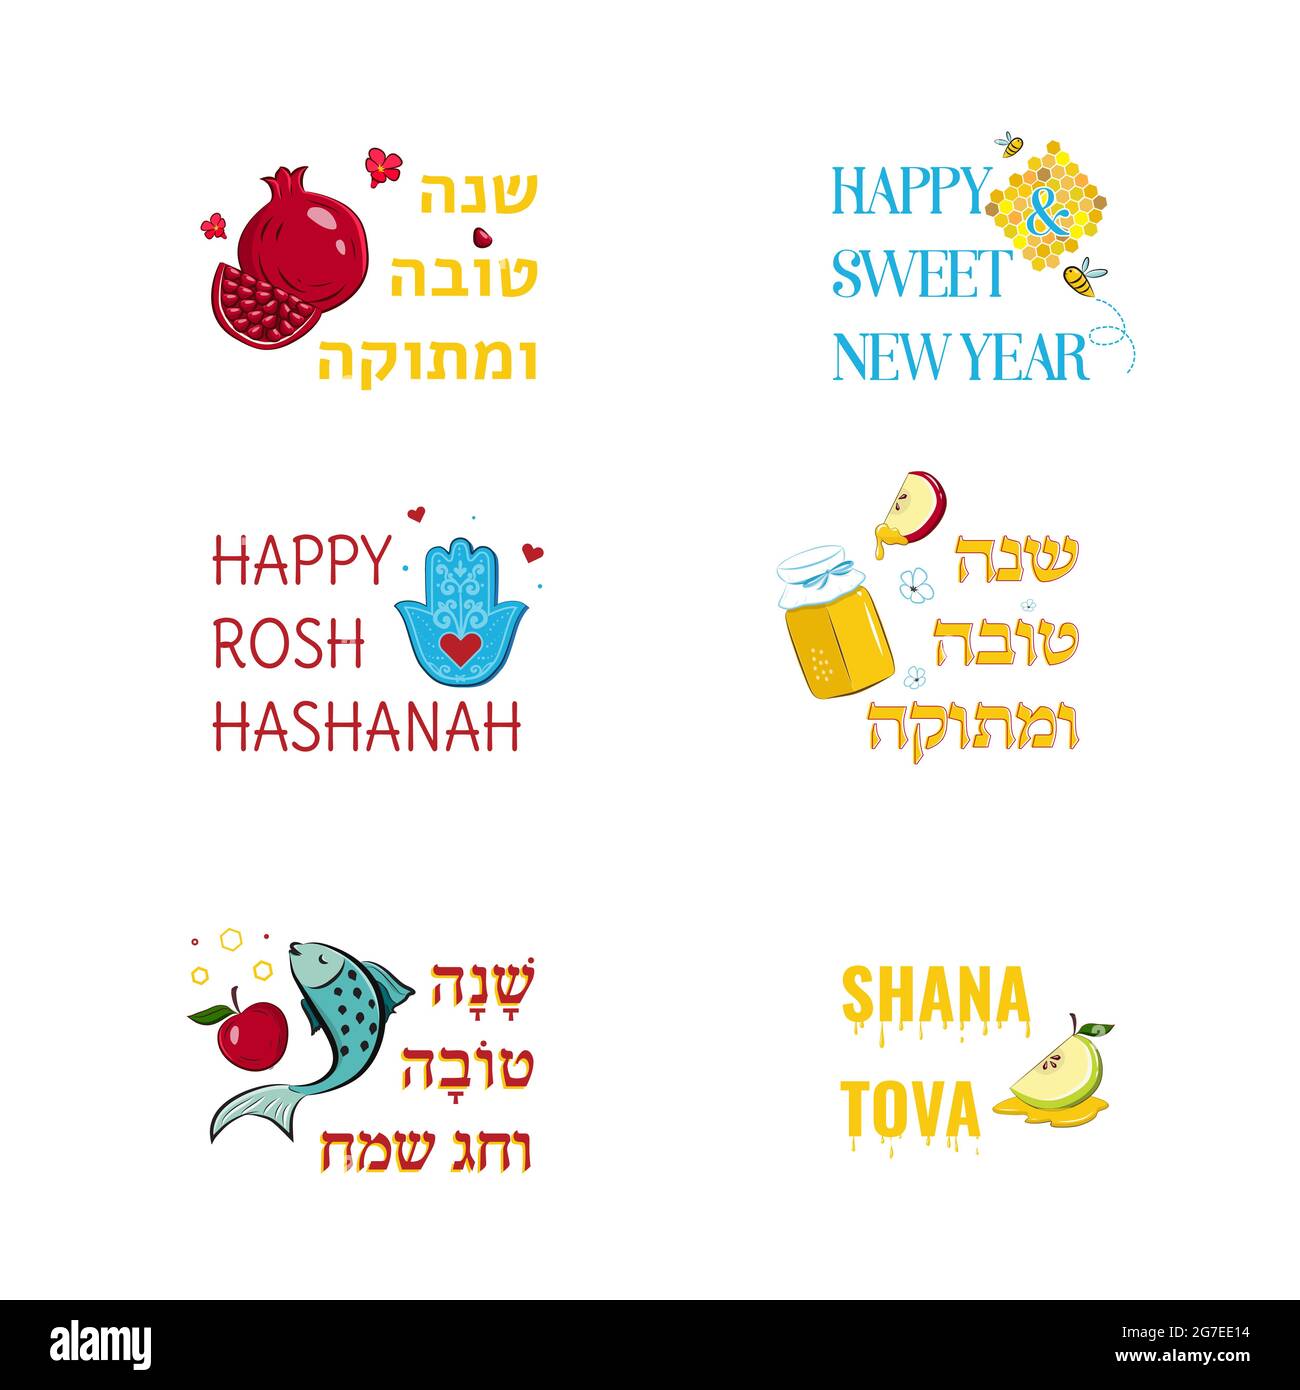 Rosh Hashanah Jüdische Feiertagsgrußkarten mit traditionellen Grüßen und Symbolen, Apfel, Granatapfel, Honig, Fisch, hamsa. Hebräischer Text. Stock Vektor